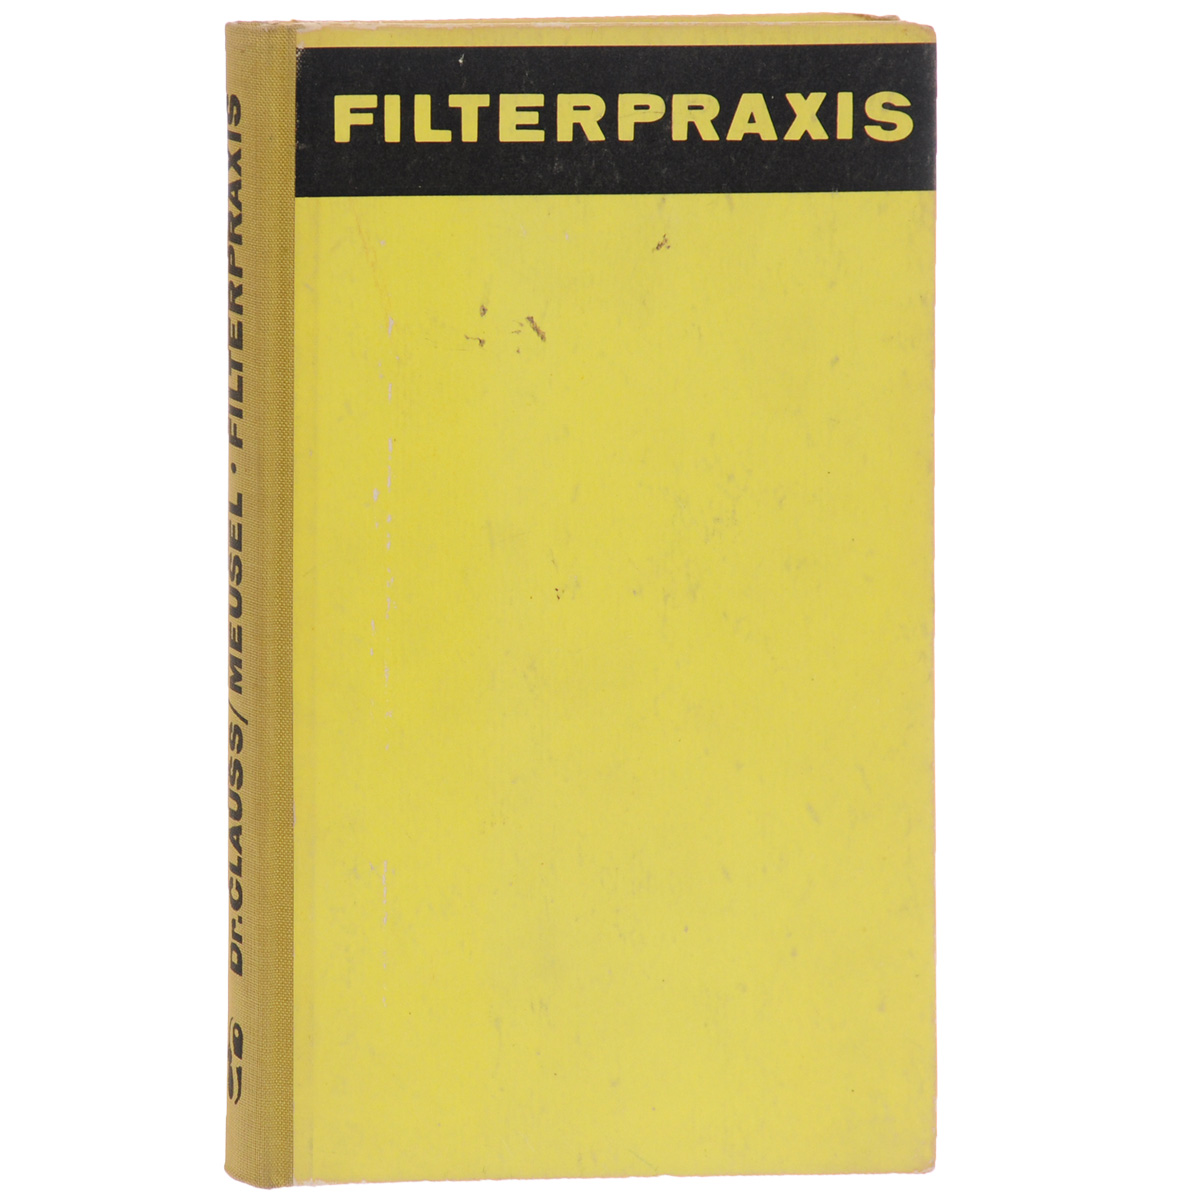 Filterpraxis